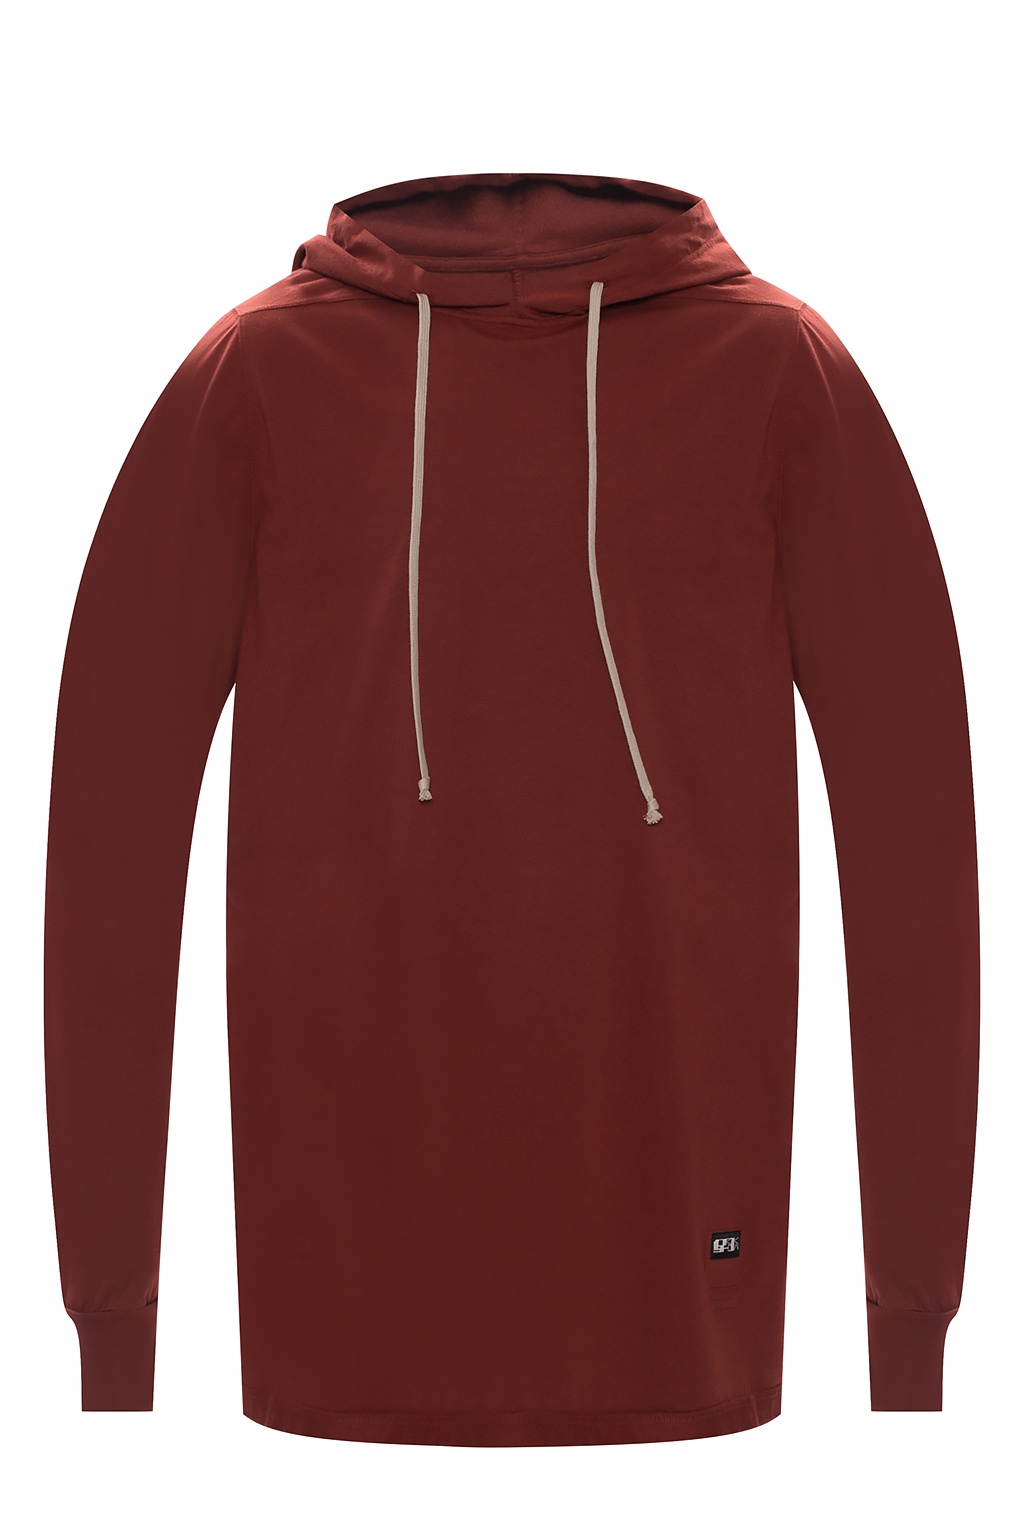 Hooded T - shirt Rick Owens DRKSHDW - Mens Essentials Sweatshirt -  SchaferandweinerShops GB